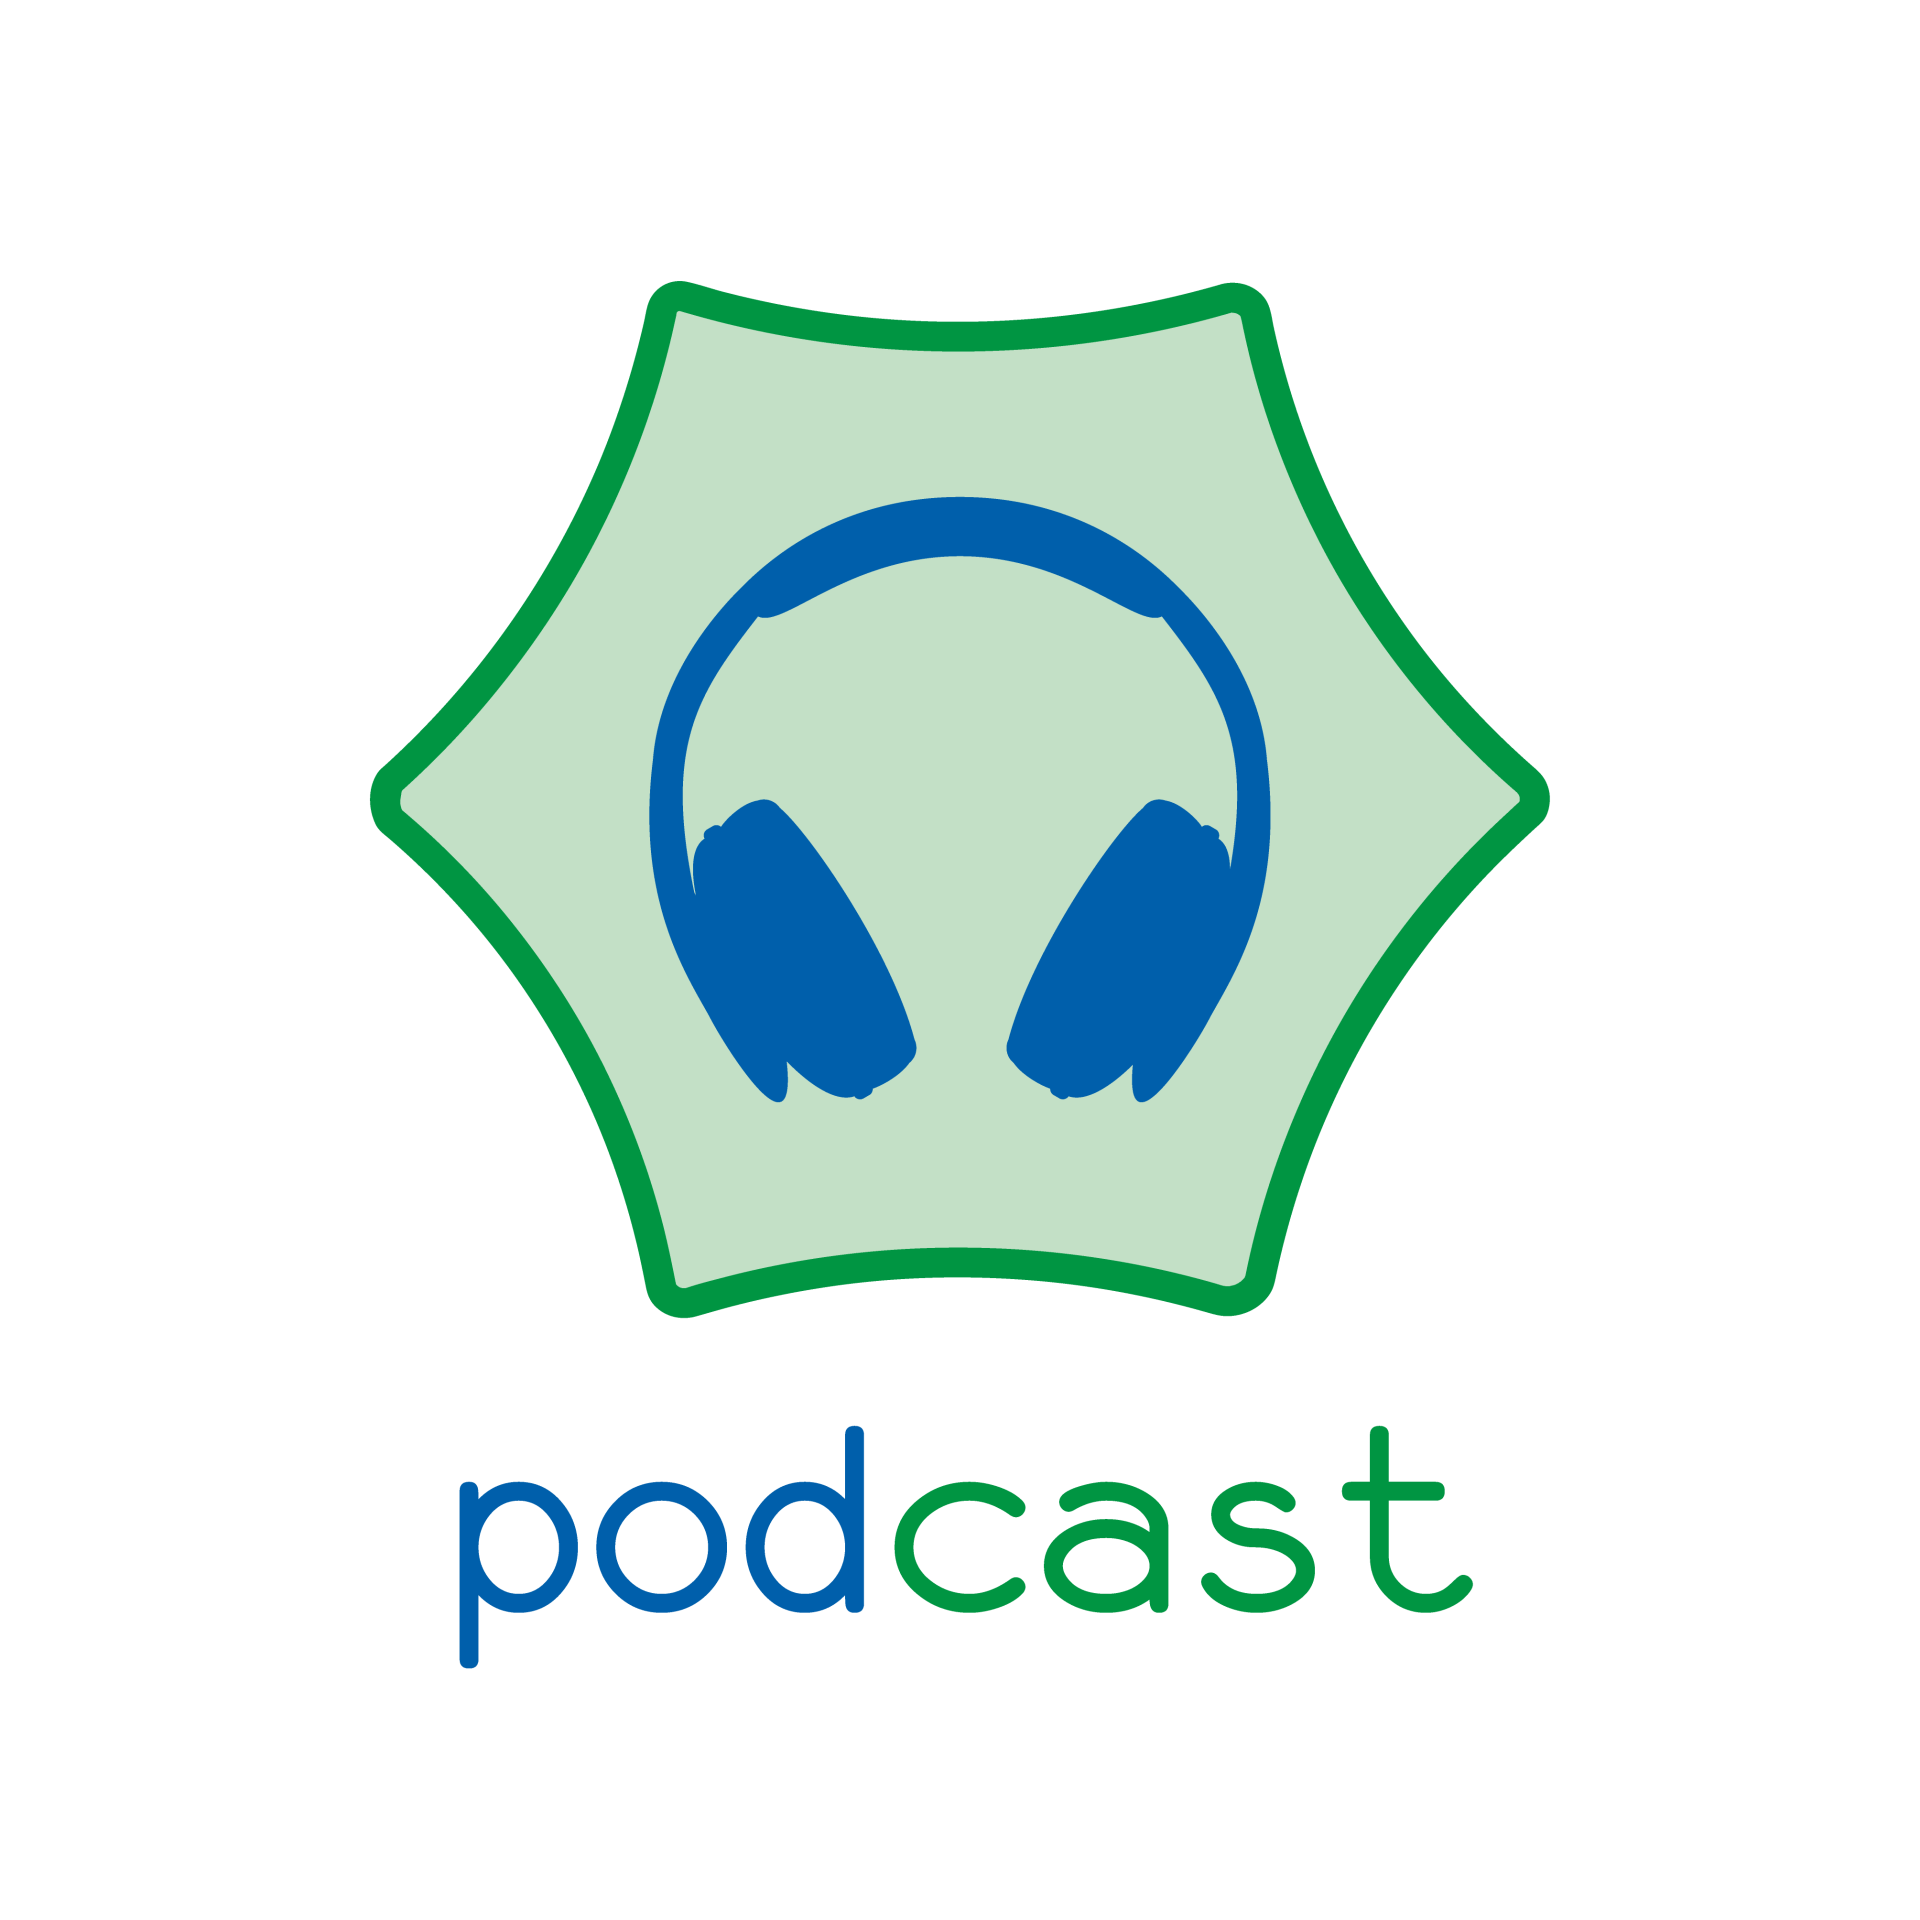 blaubiologie - podcast